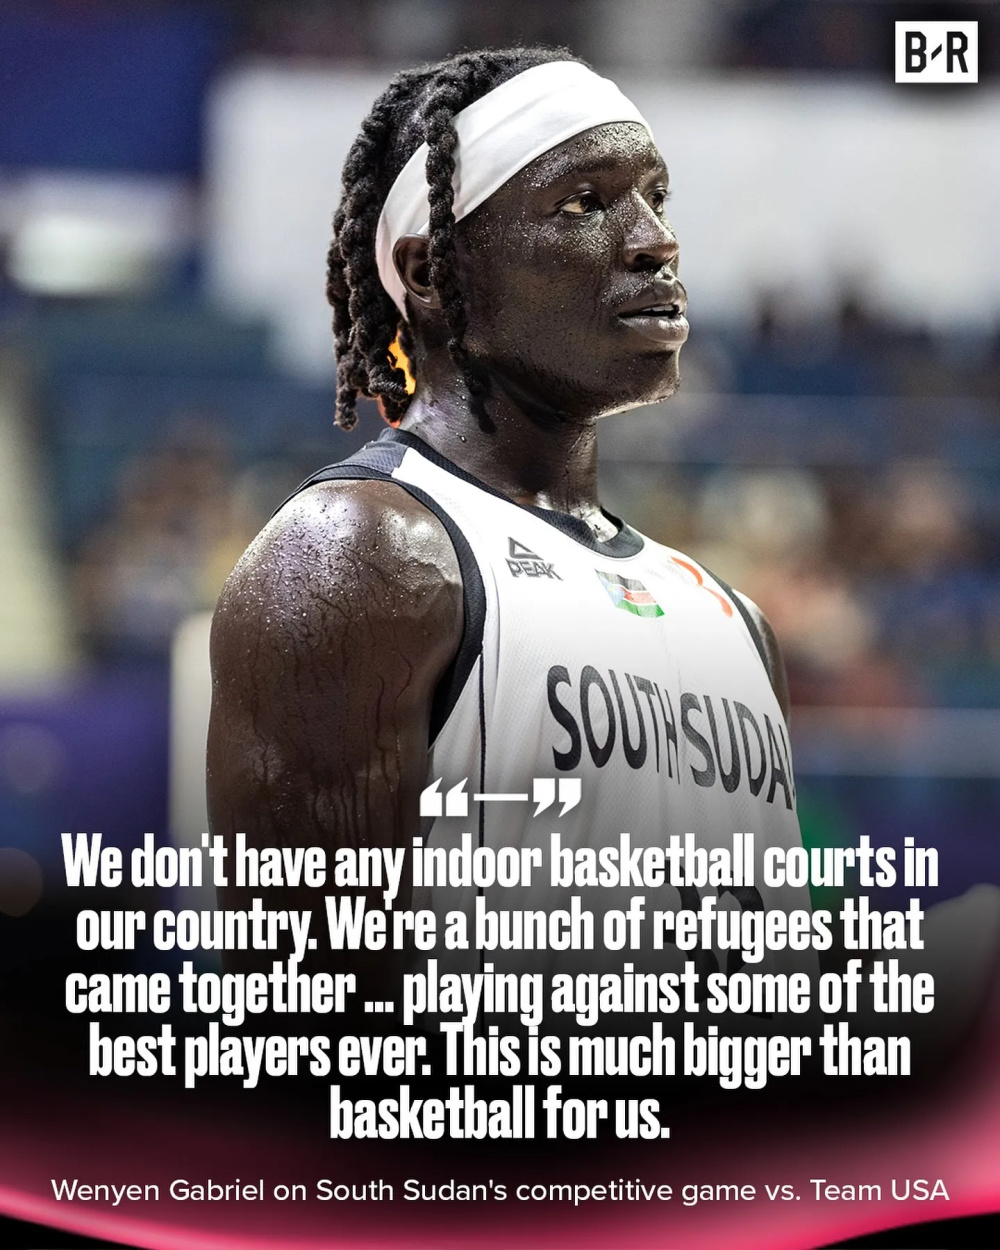 前湖人球员强调南苏丹男篮的情况:没有室内篮球场,我们是难民